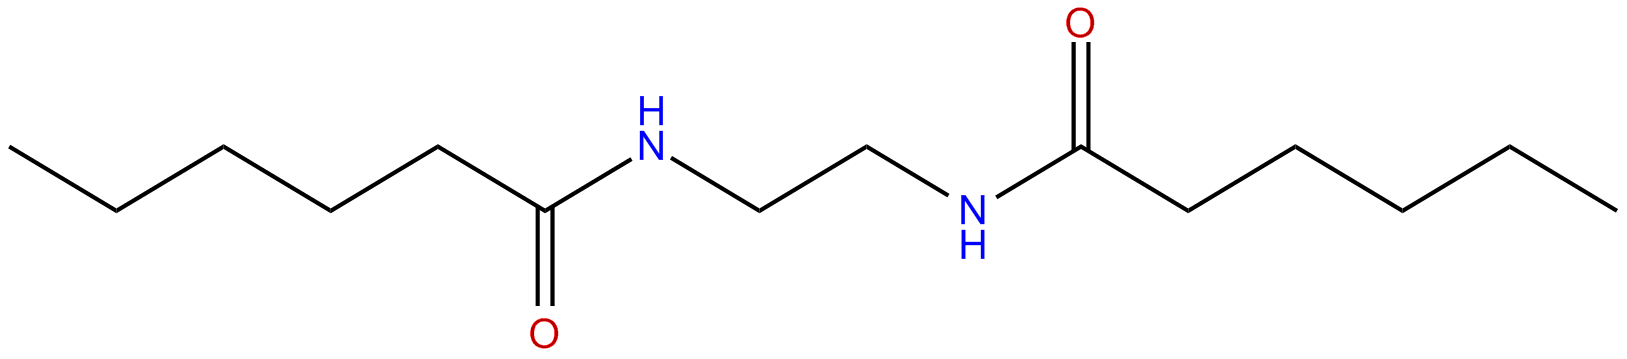 Image of N,N'-ethane-1,2-diyldihexanamide